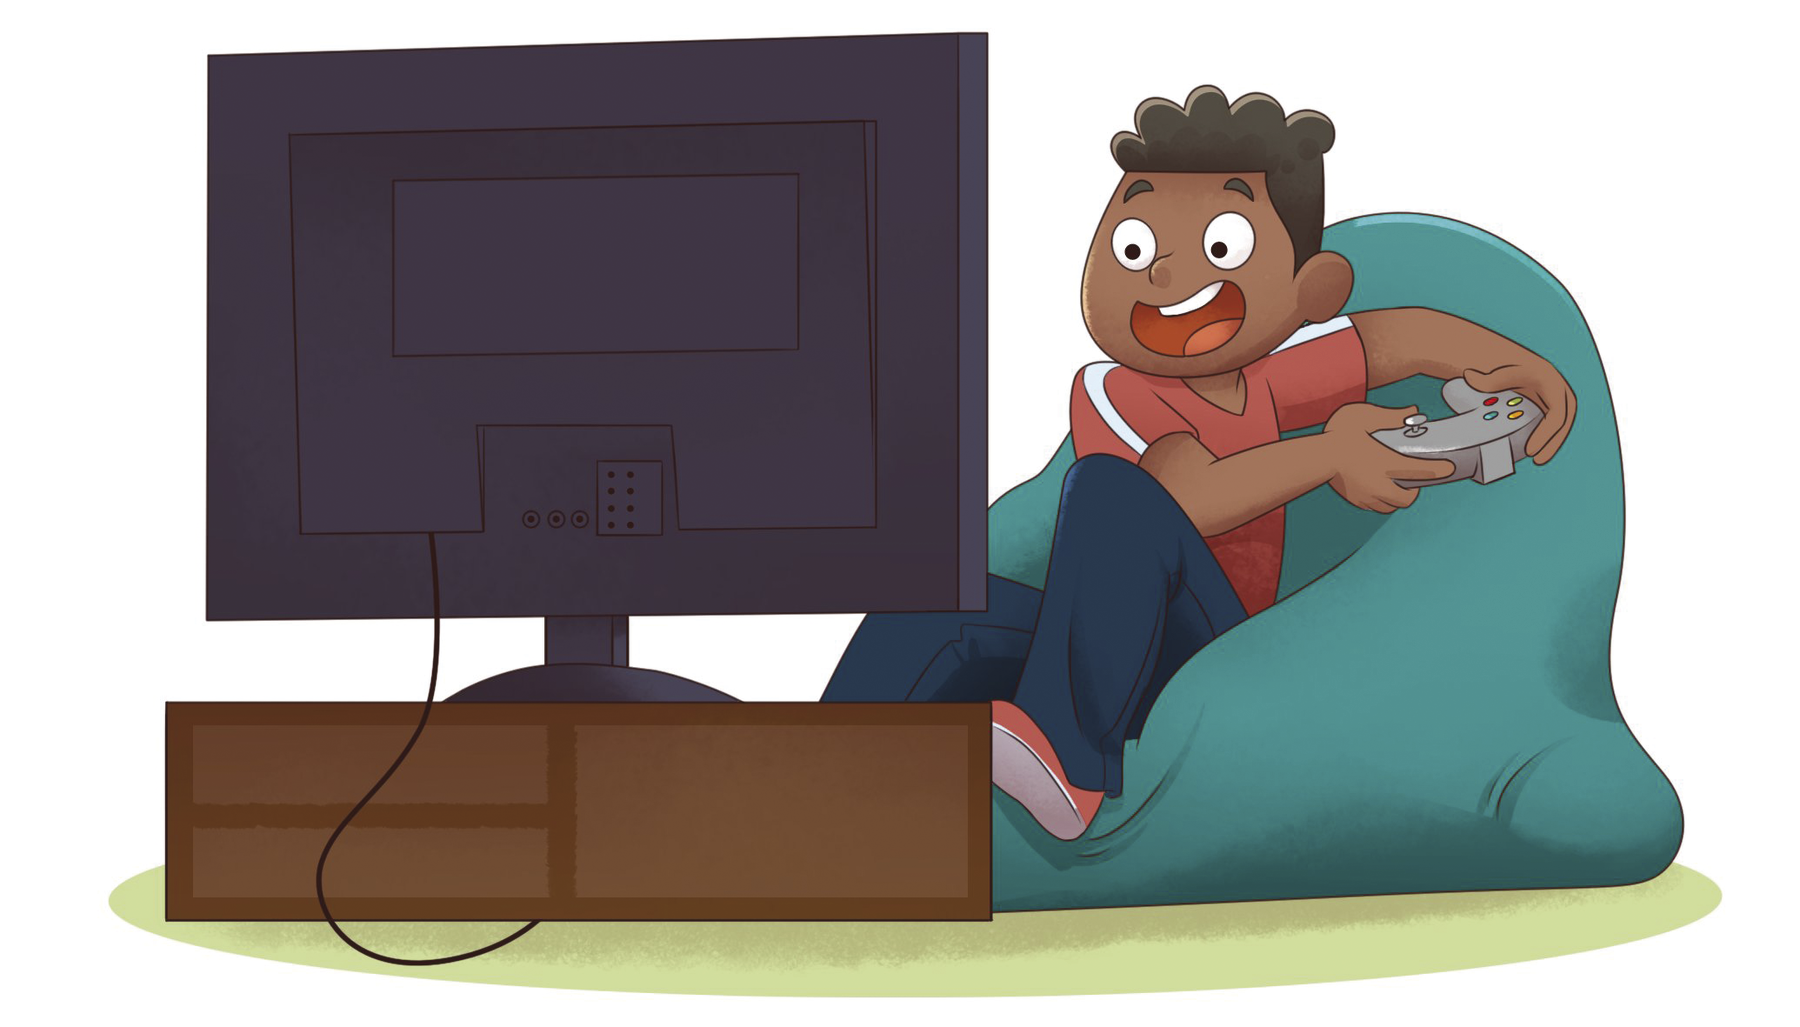 Ilustração. Menino de cabelo enrolado, camiseta vermelha sentado no sofá com controle remoto nas mãos. Ele está de frente para a televisão.